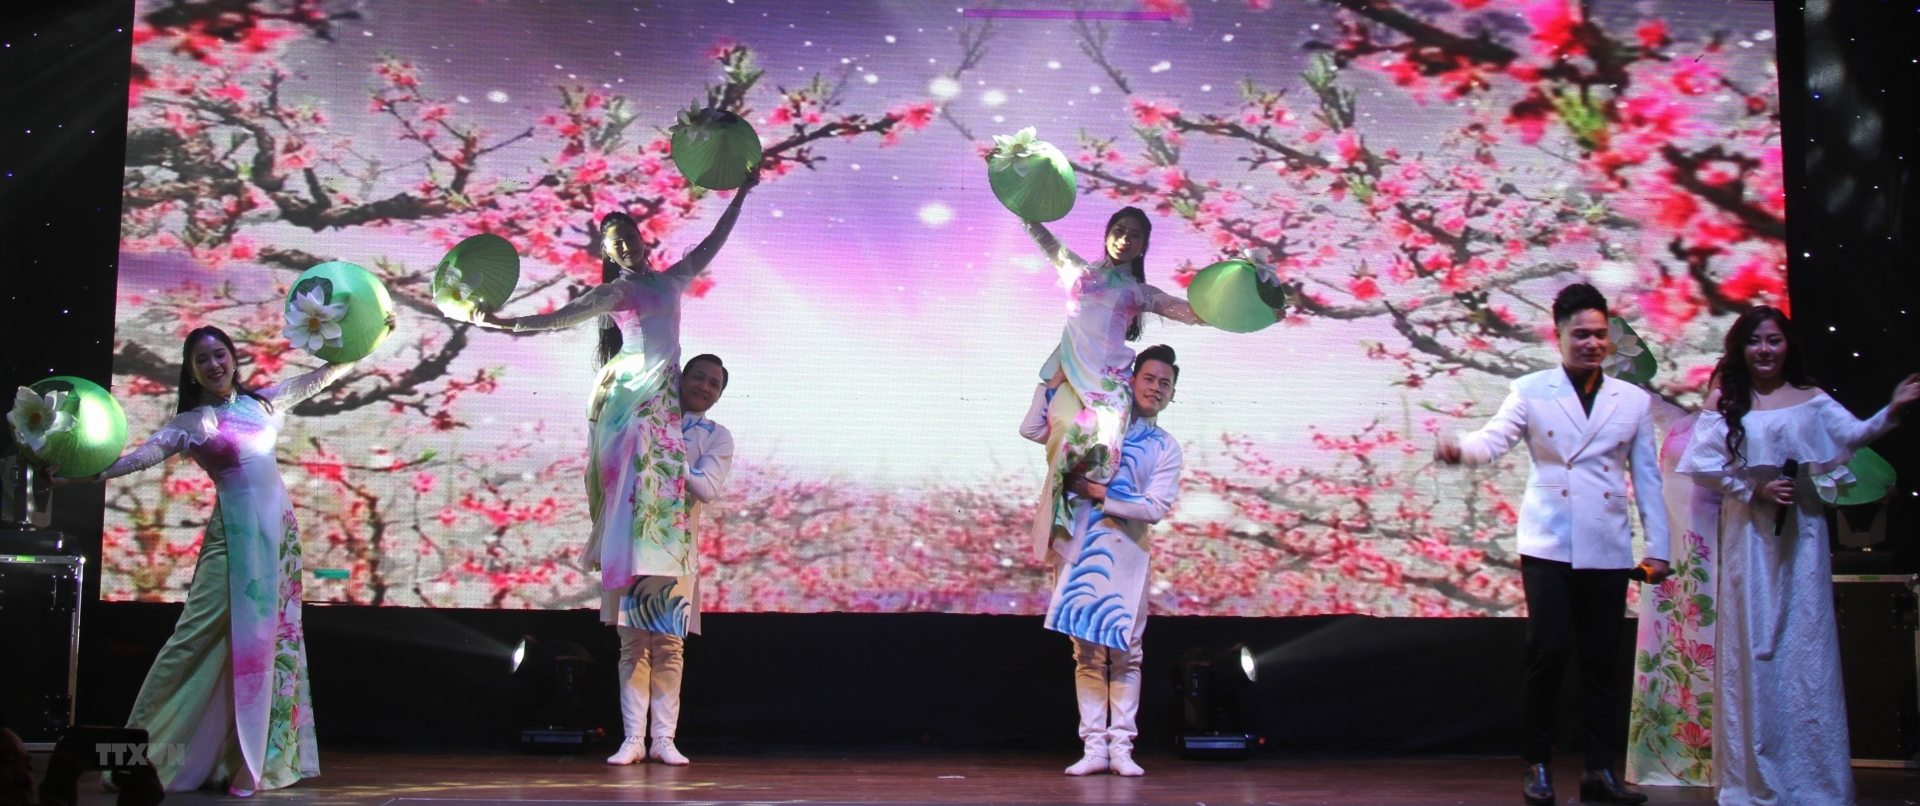 “家乡之歌”文艺晚会为旅居捷克越南人献上充满民族特色的文艺盛会。 图自越通社